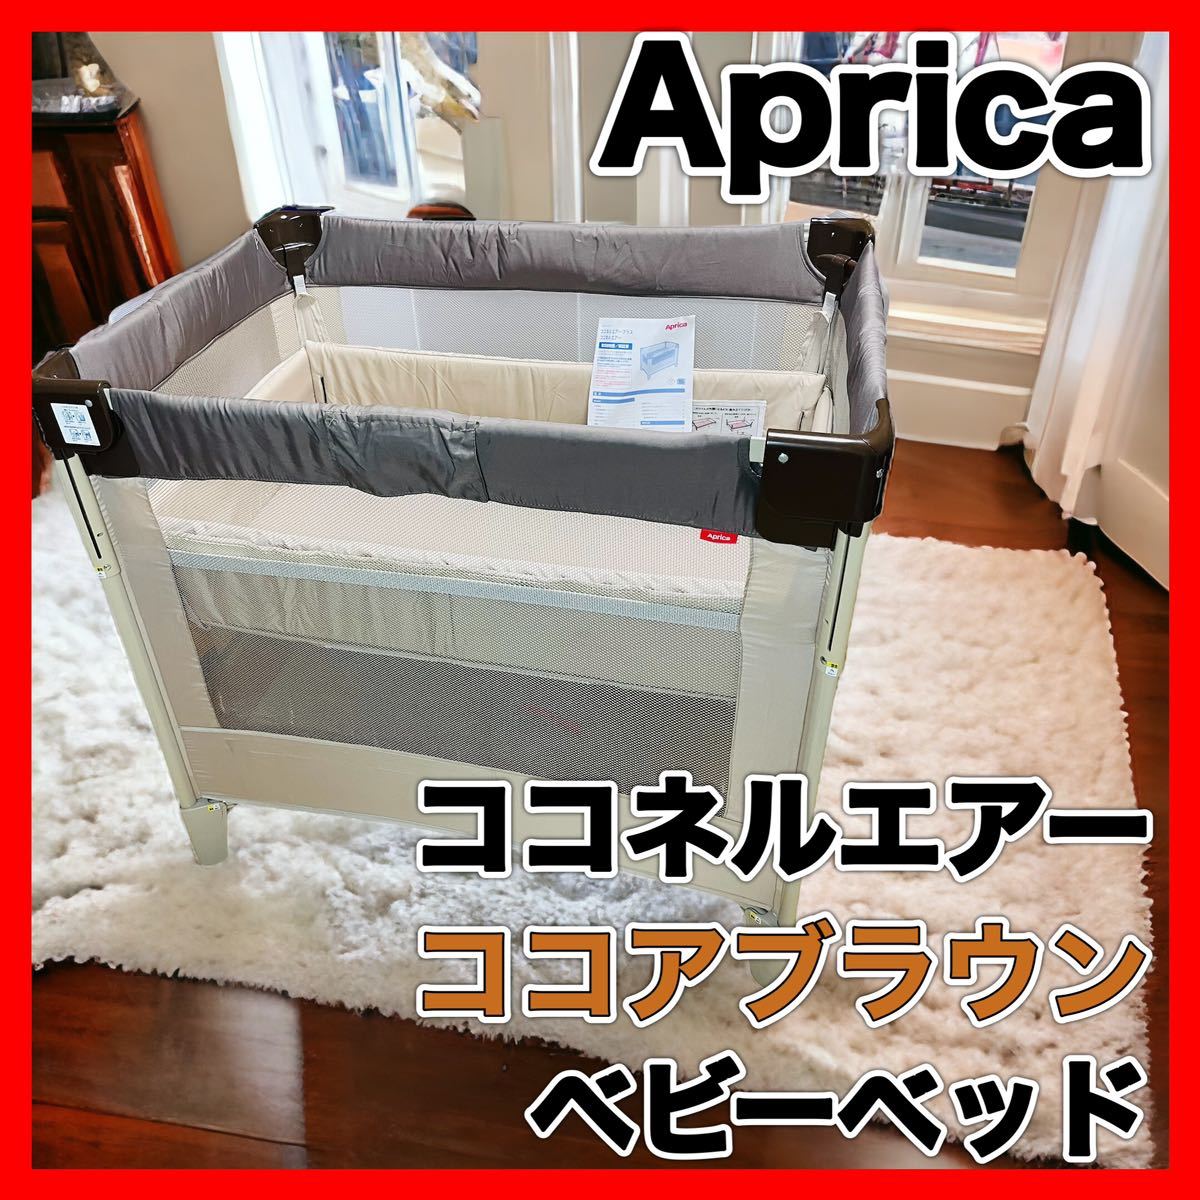 Yahoo!オークション - Aprica COCONEL Air アップリカ ココネル